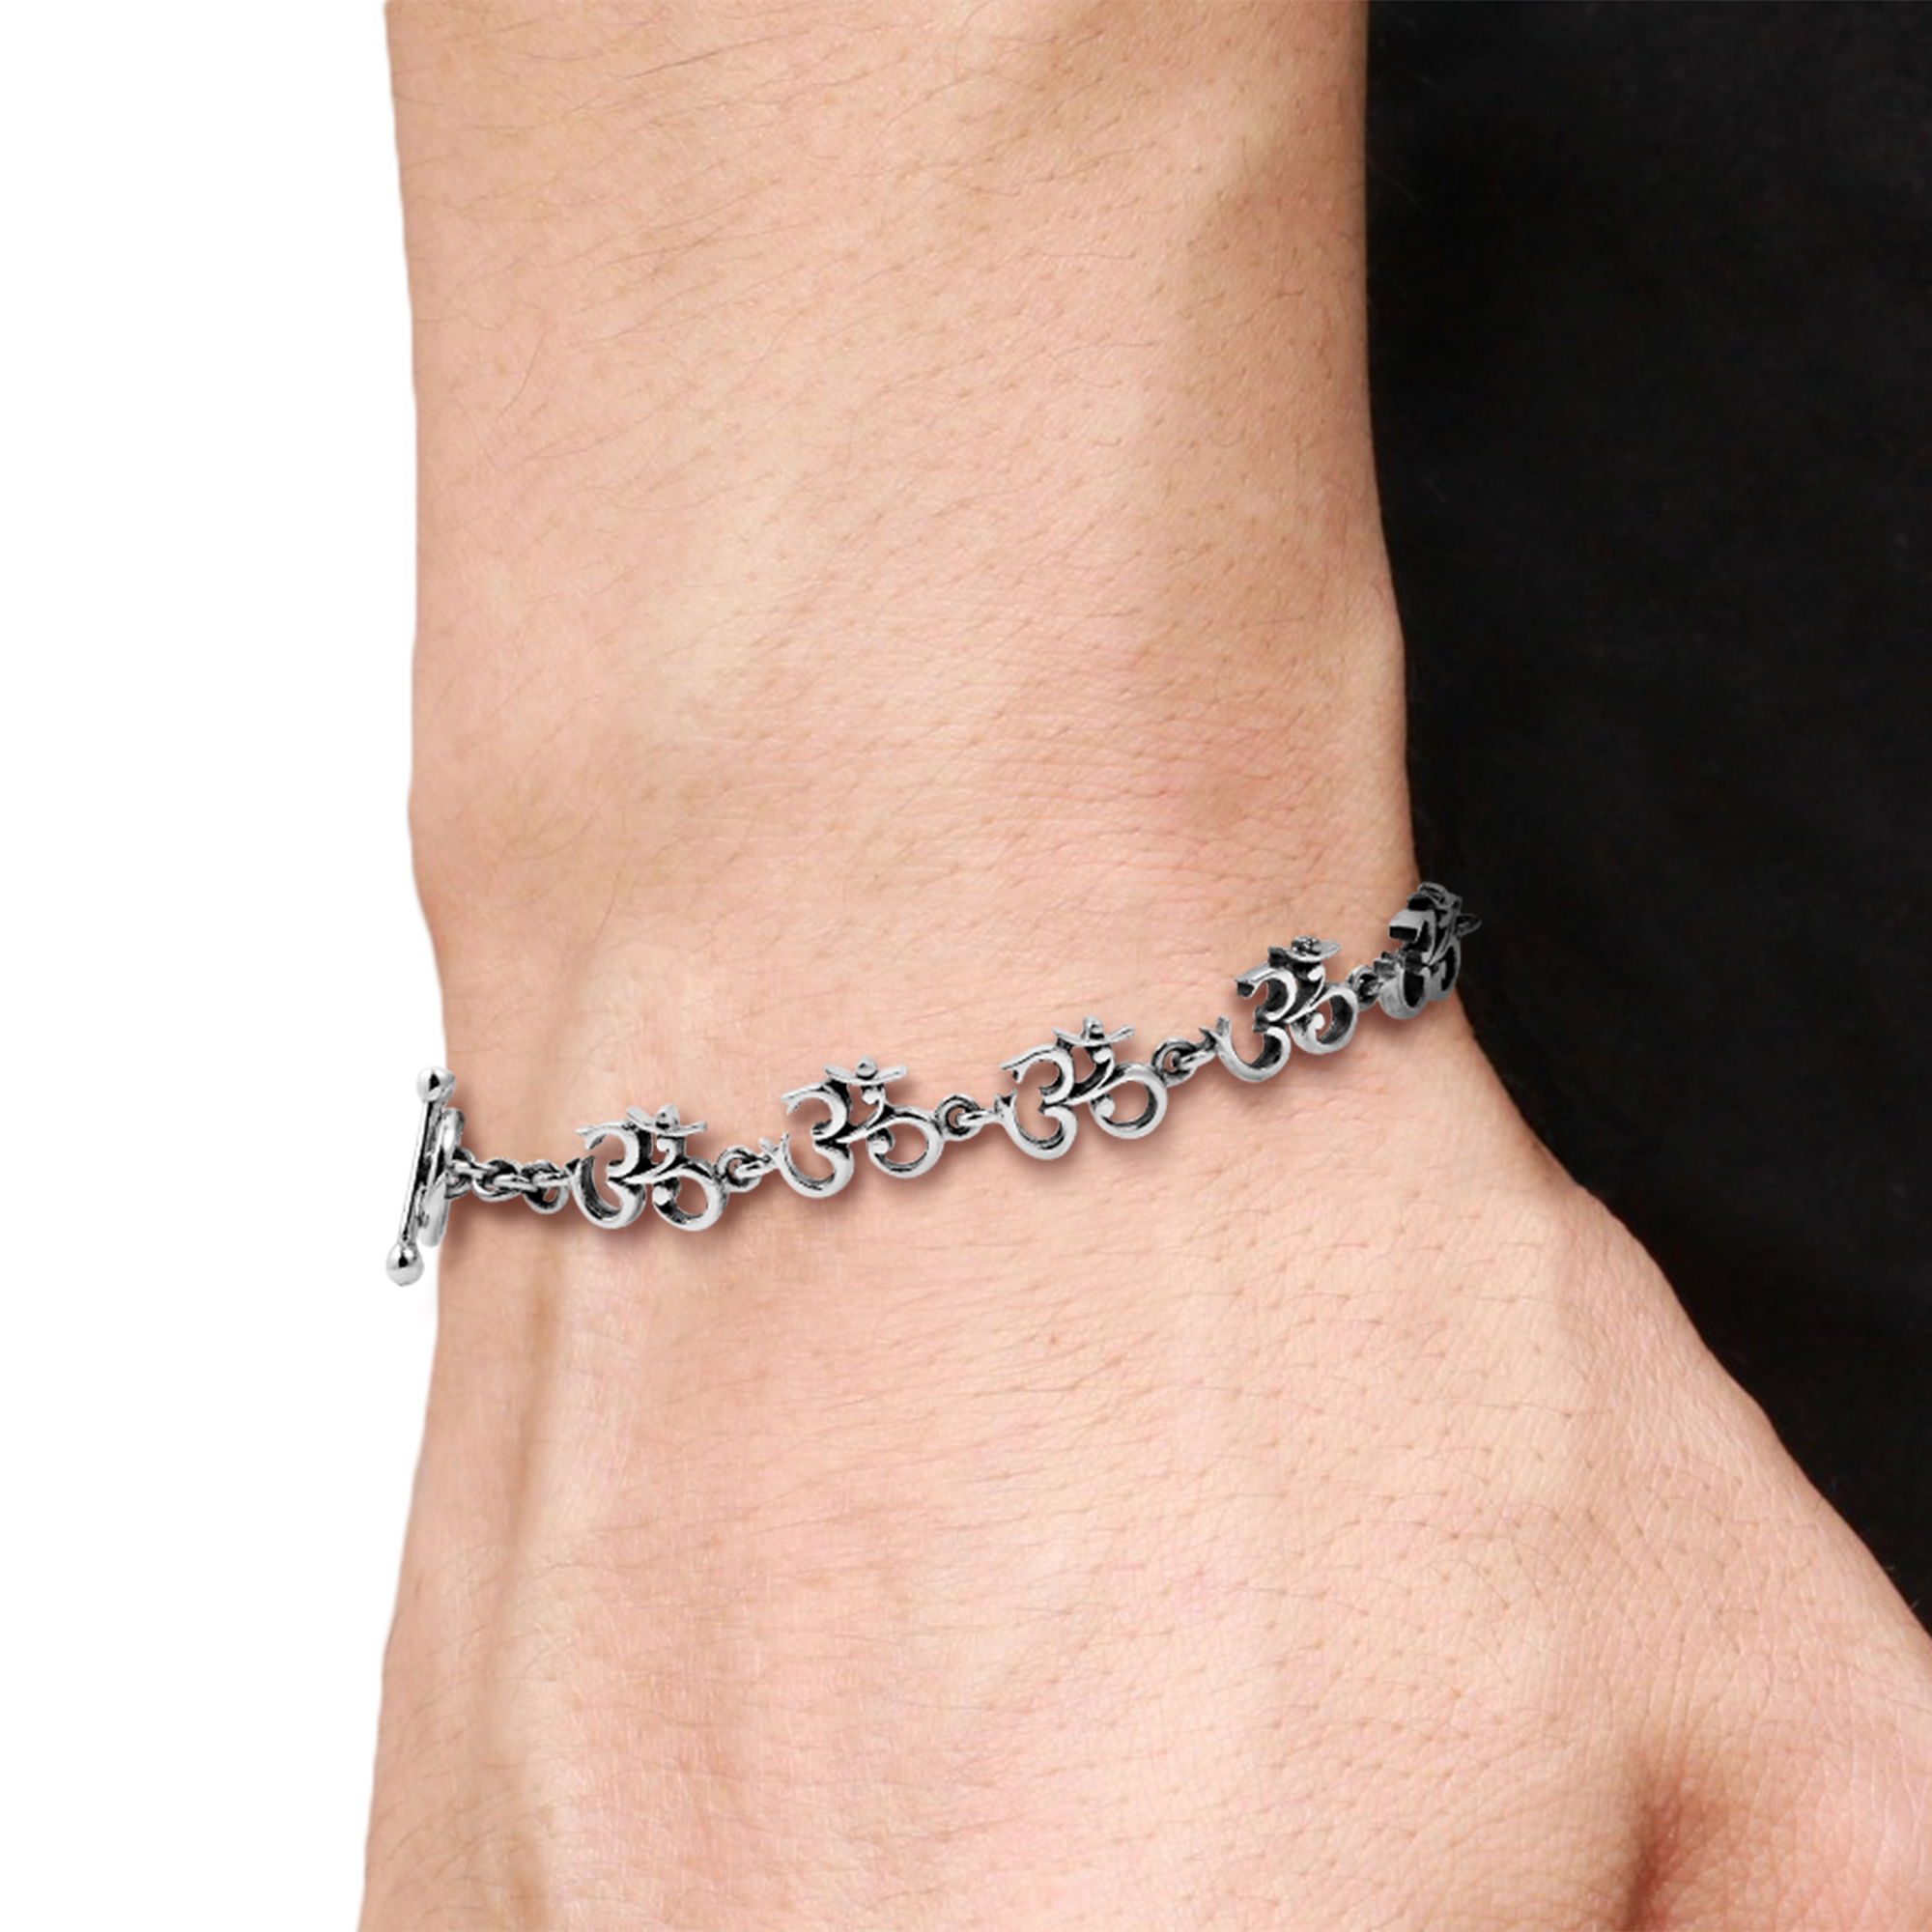 Elaborate Aum or Om Symbol .925 Sterling Silver Link Bracelet